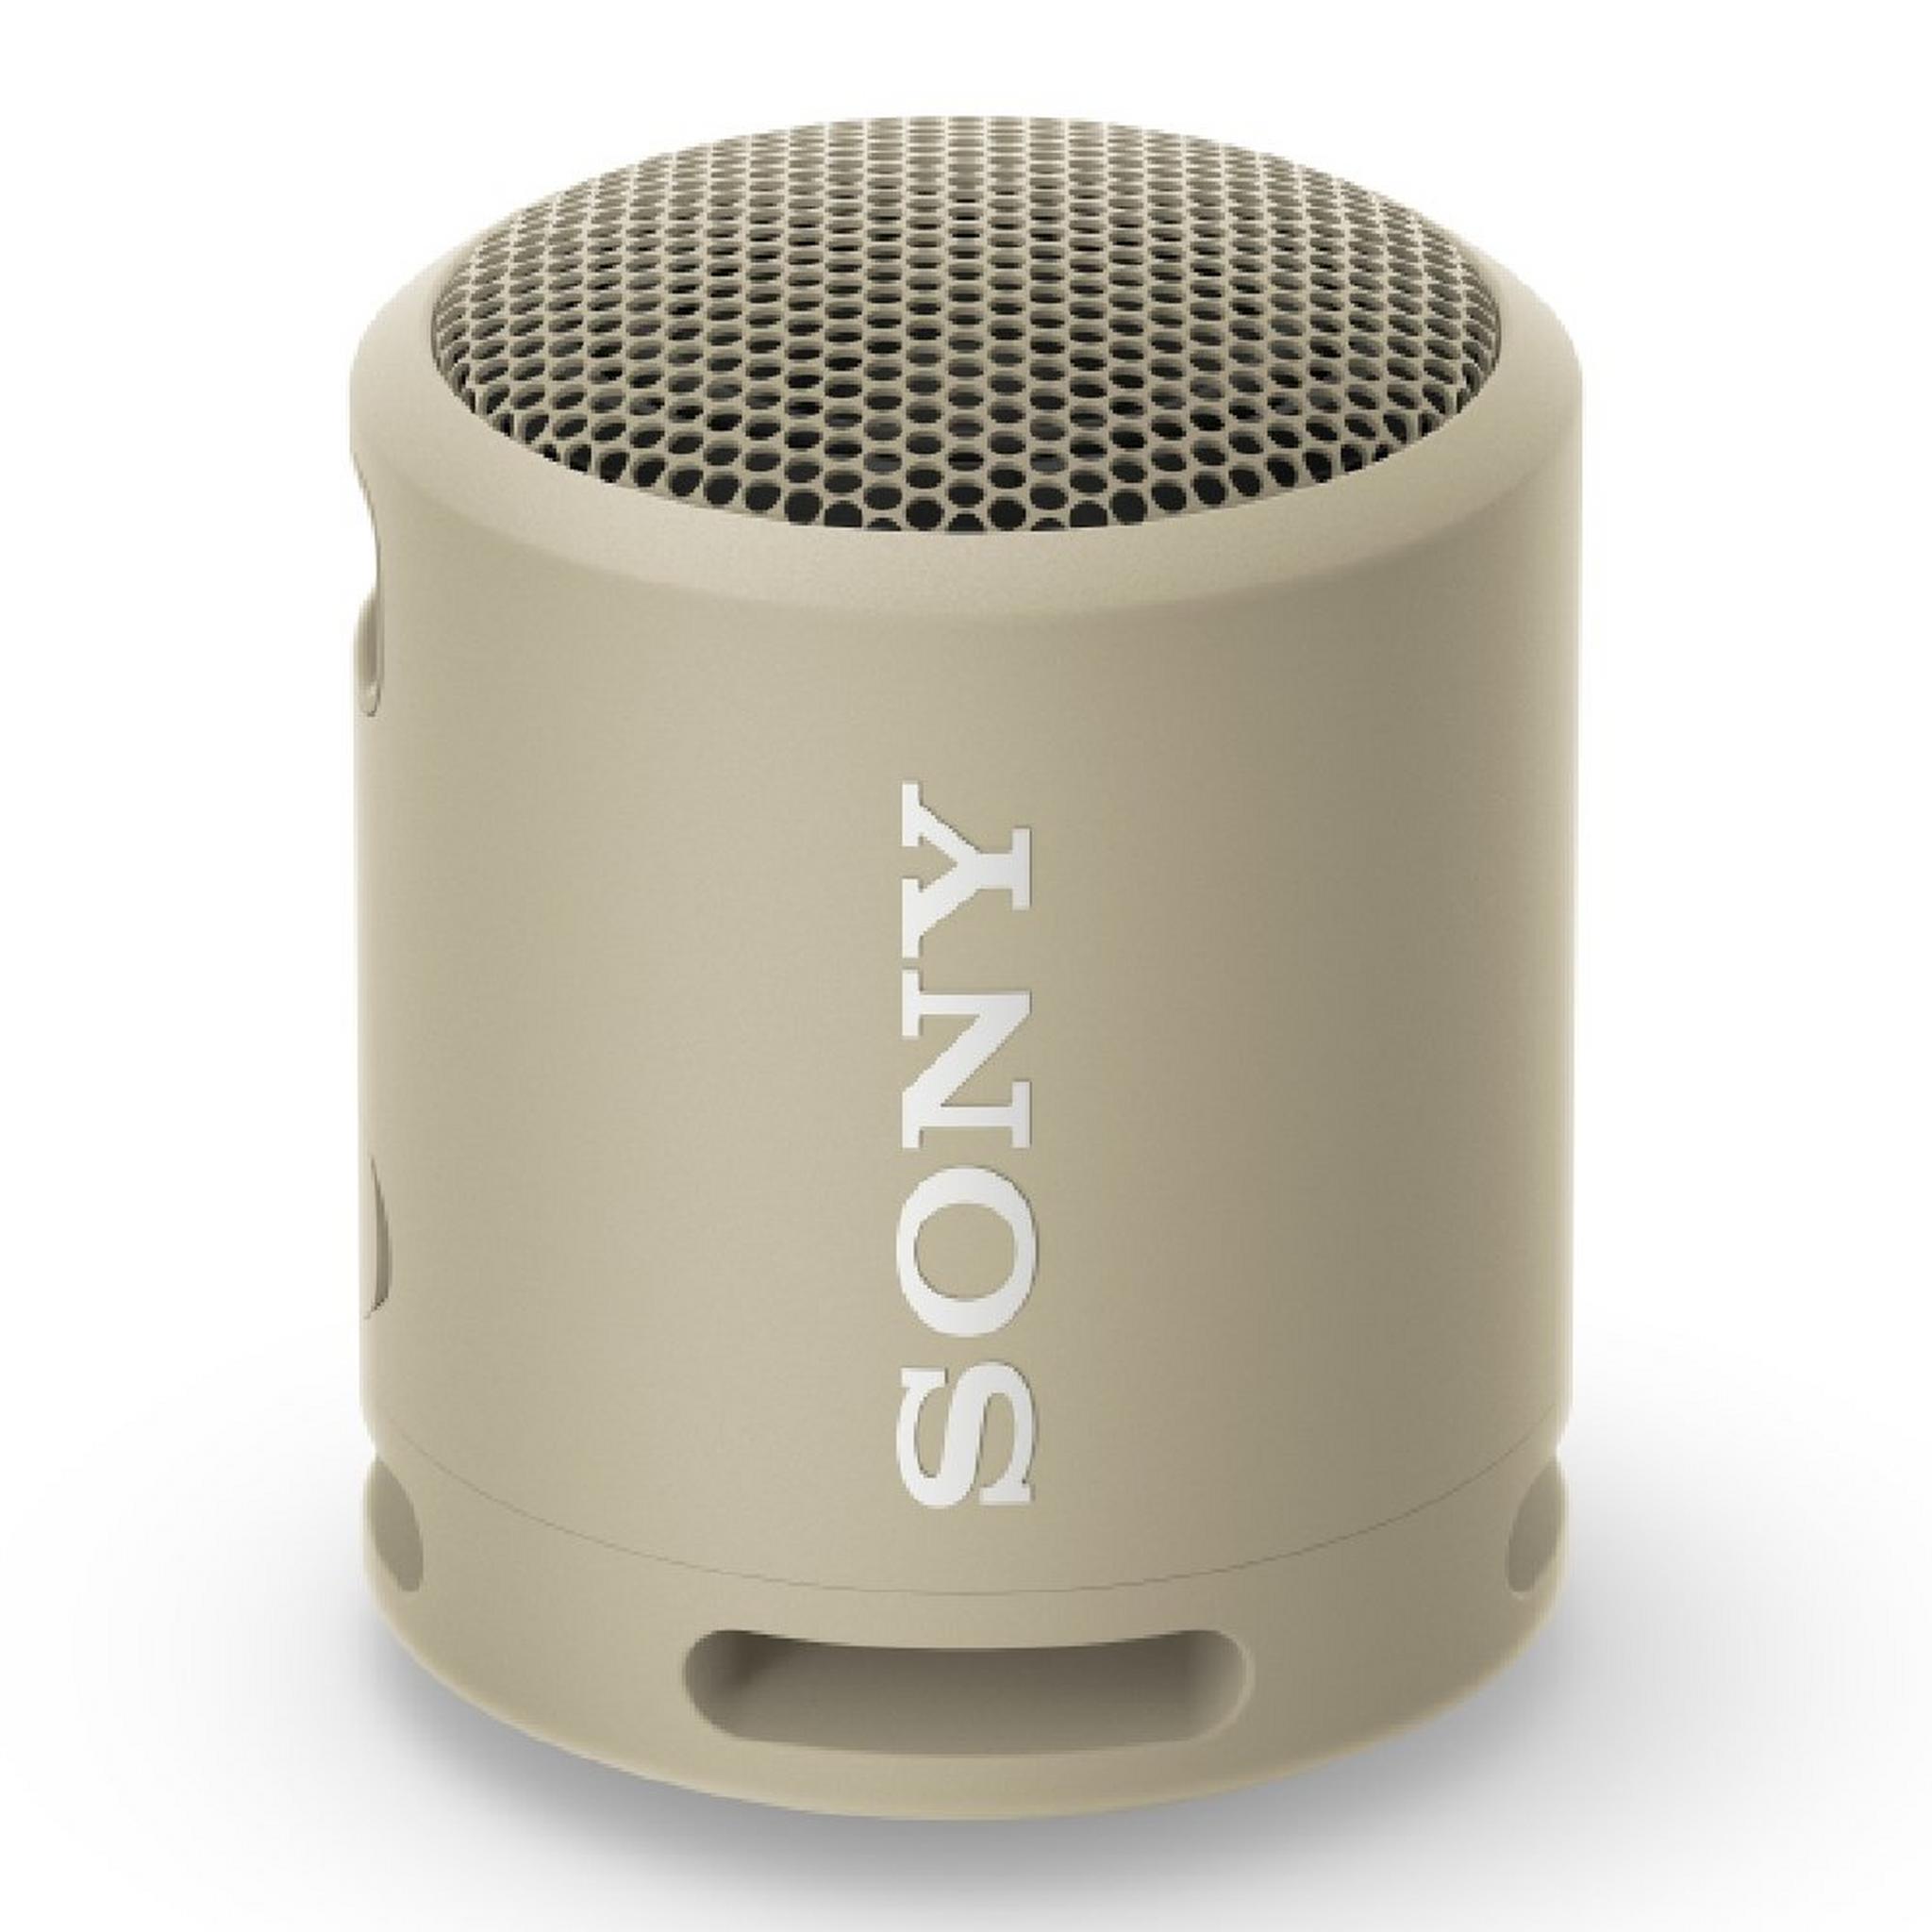 Sony XB13 Wireless Waterproof 16 hrs Speaker - Beige